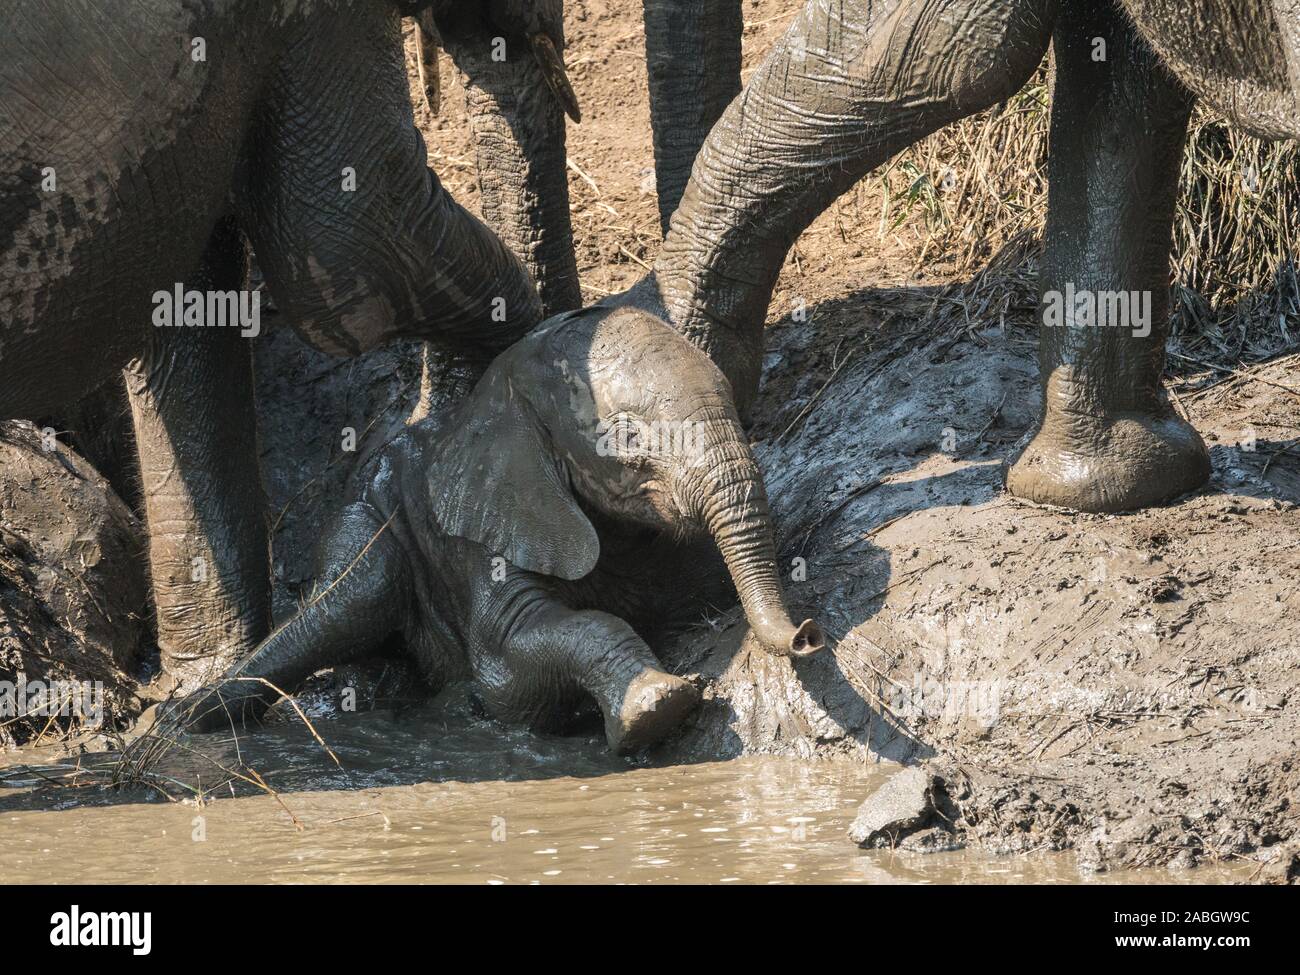 Bébé éléphant africain assise ou allongée dans l'eau boueuse, couvert de boue et d'être poussées par deux éléphants adultes à un étang dans Kruger, Afrique du Sud Banque D'Images